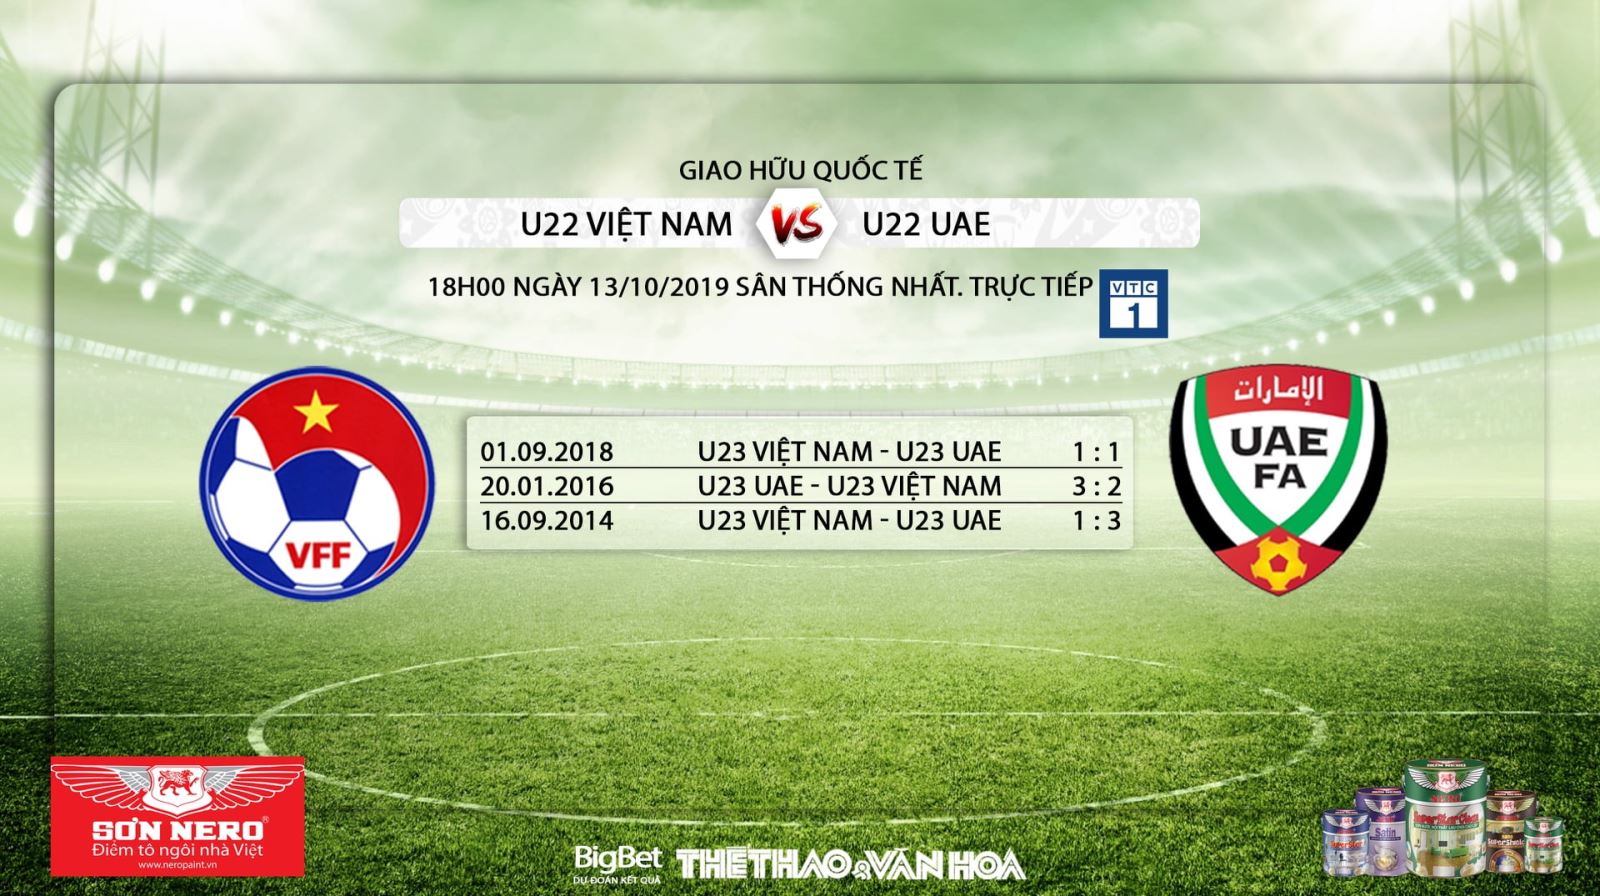 Ket qua bong da hôm nay, Kết quả bóng đá, U22 Việt Nam, U22 UAE, U22 Việt Nam vs U22 UAE, trực tiếp bóng đá, VTC1, VTC3, VTV5, VTV6